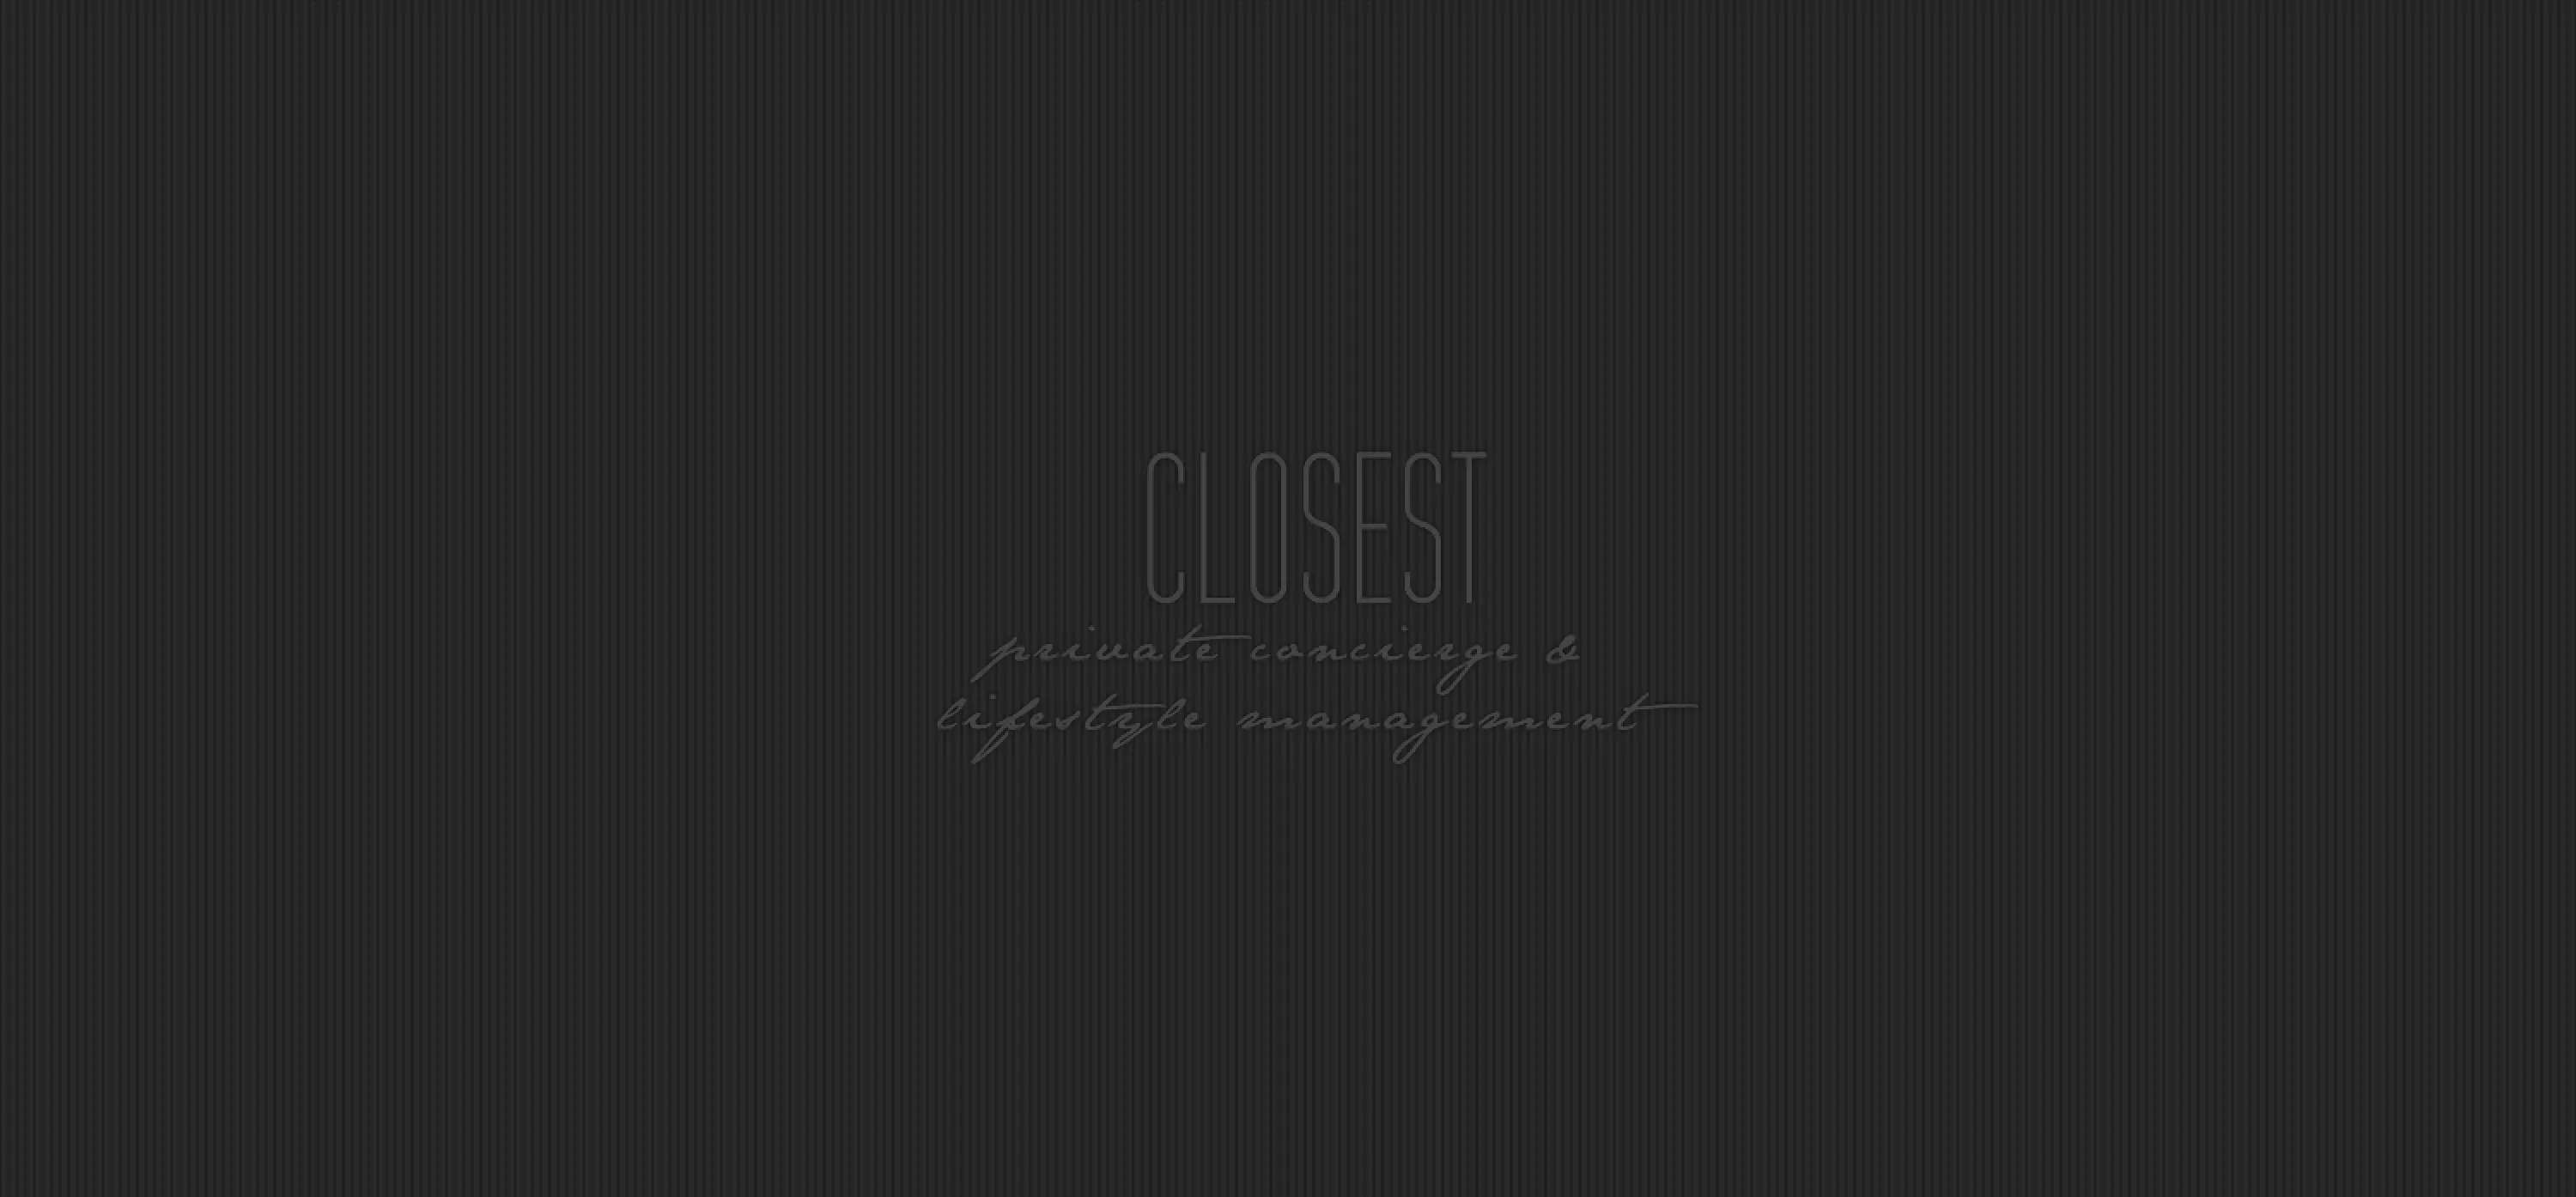 Closest